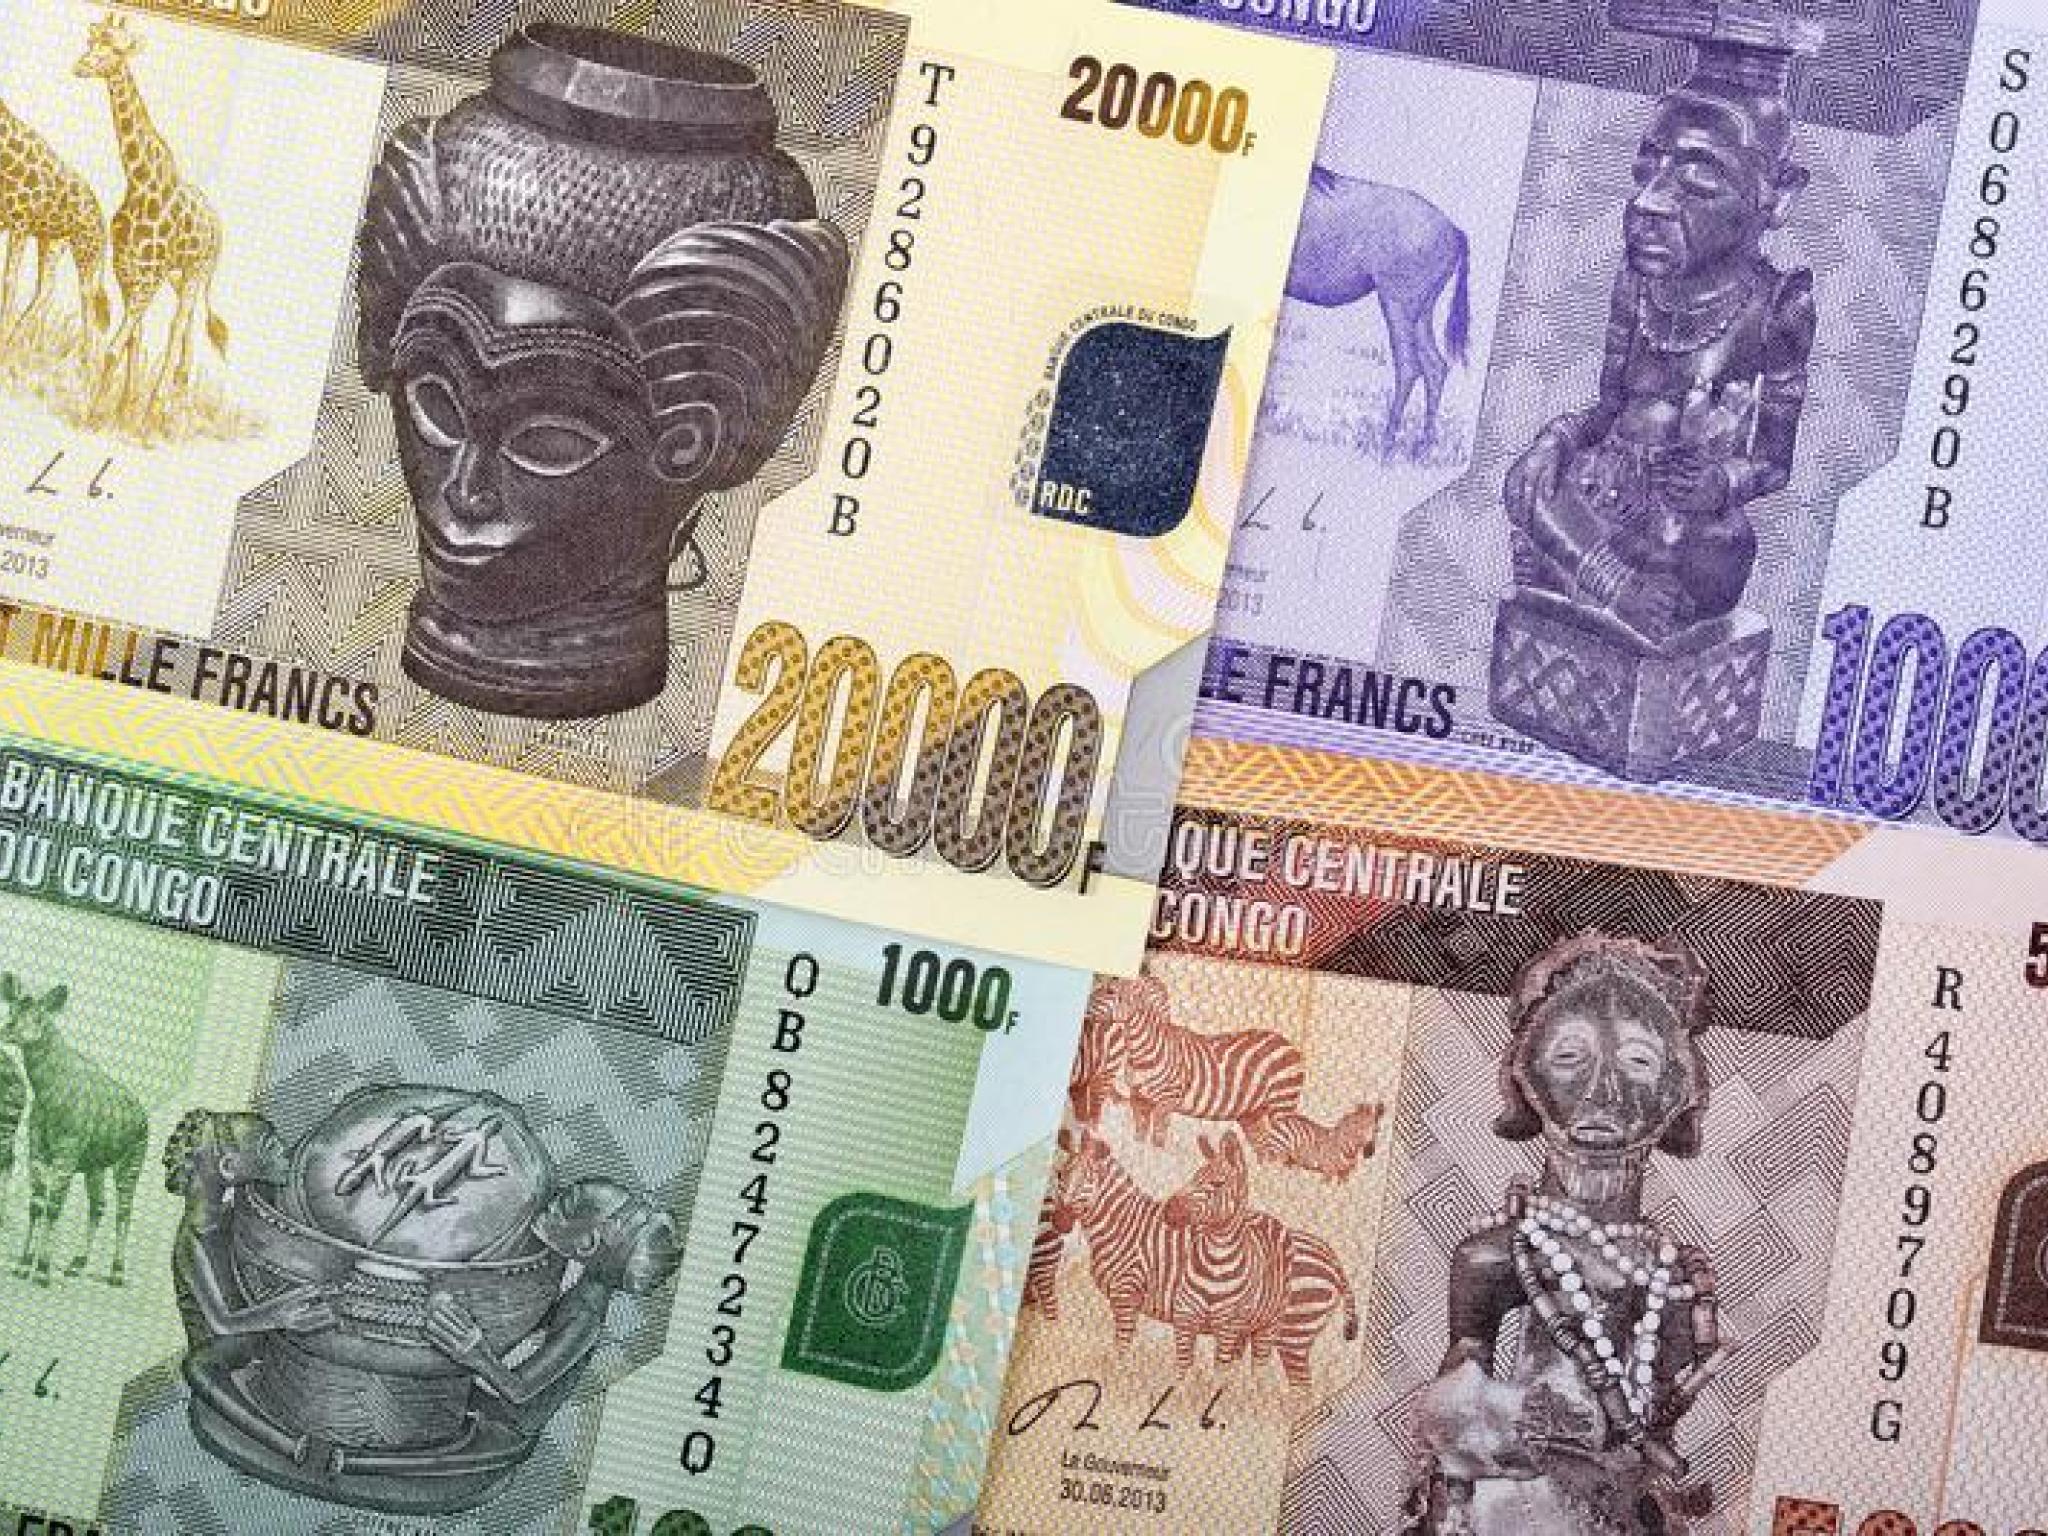 Collection des billets (Franc congolais) à valeur faciale élevée